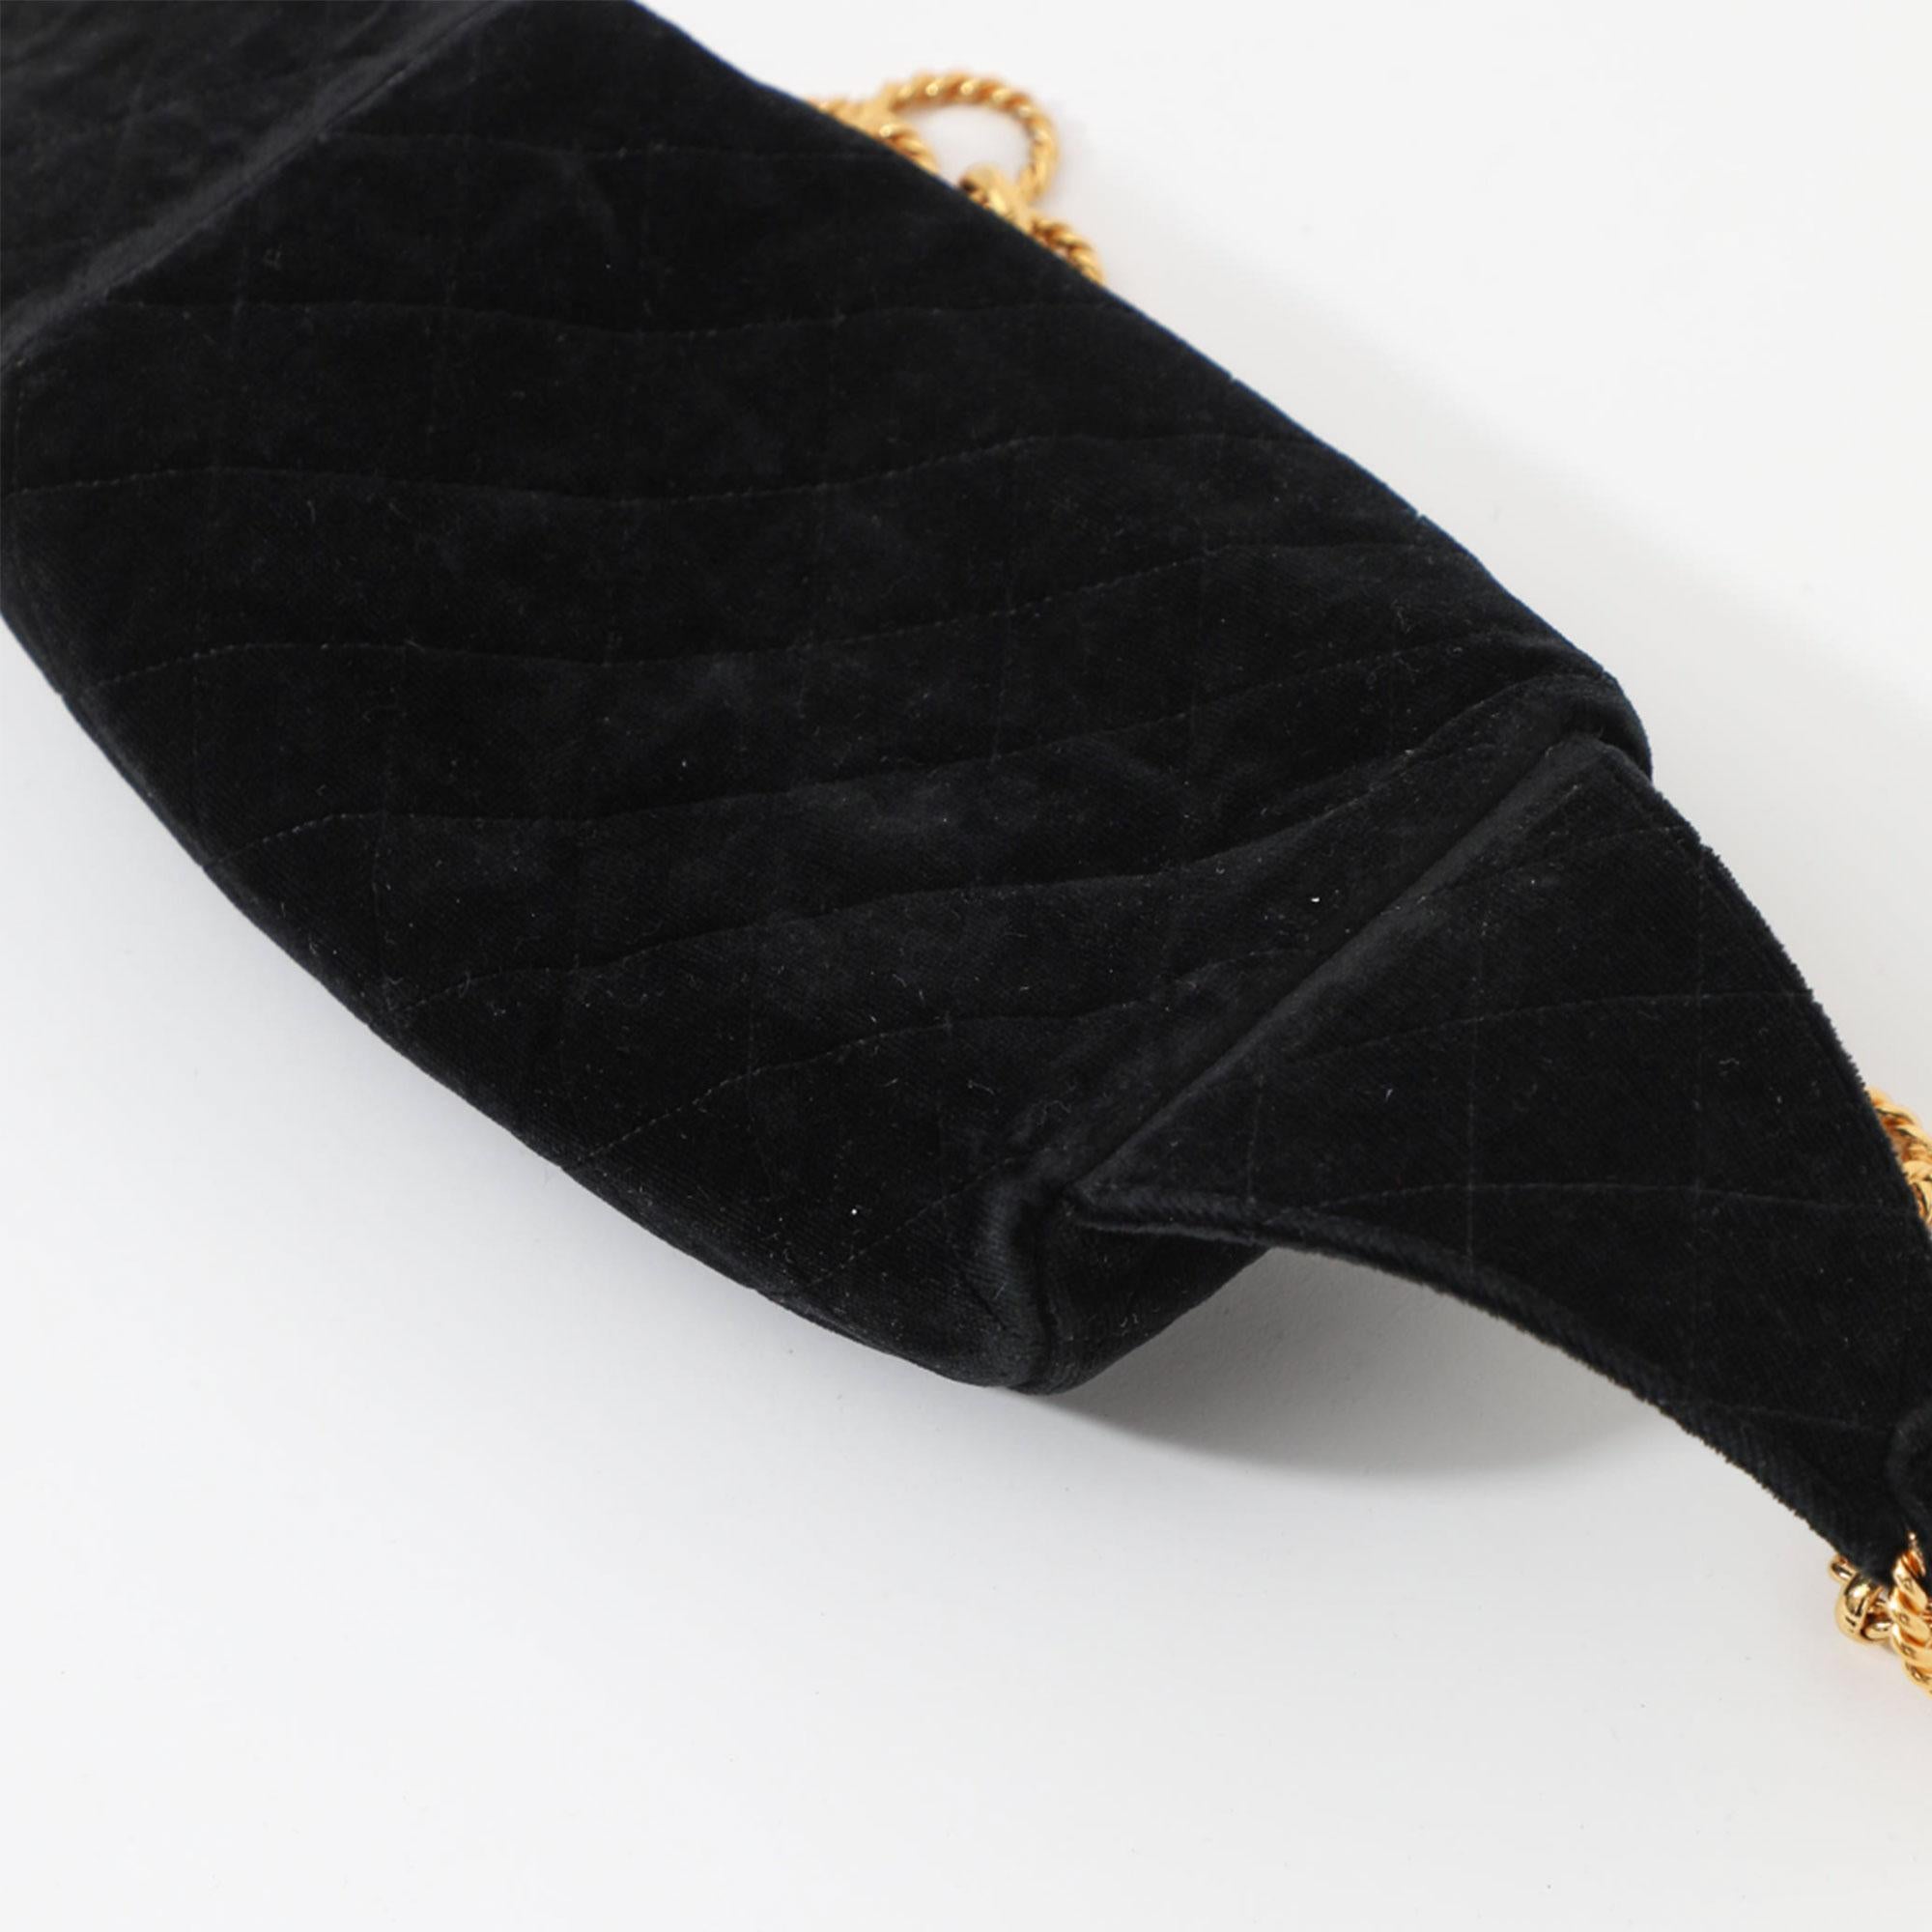 Chanel 1991 Vintage Velvet Quilted Medallion Fanny Pack Waist Belt Bag Rare Bag For Sale 8